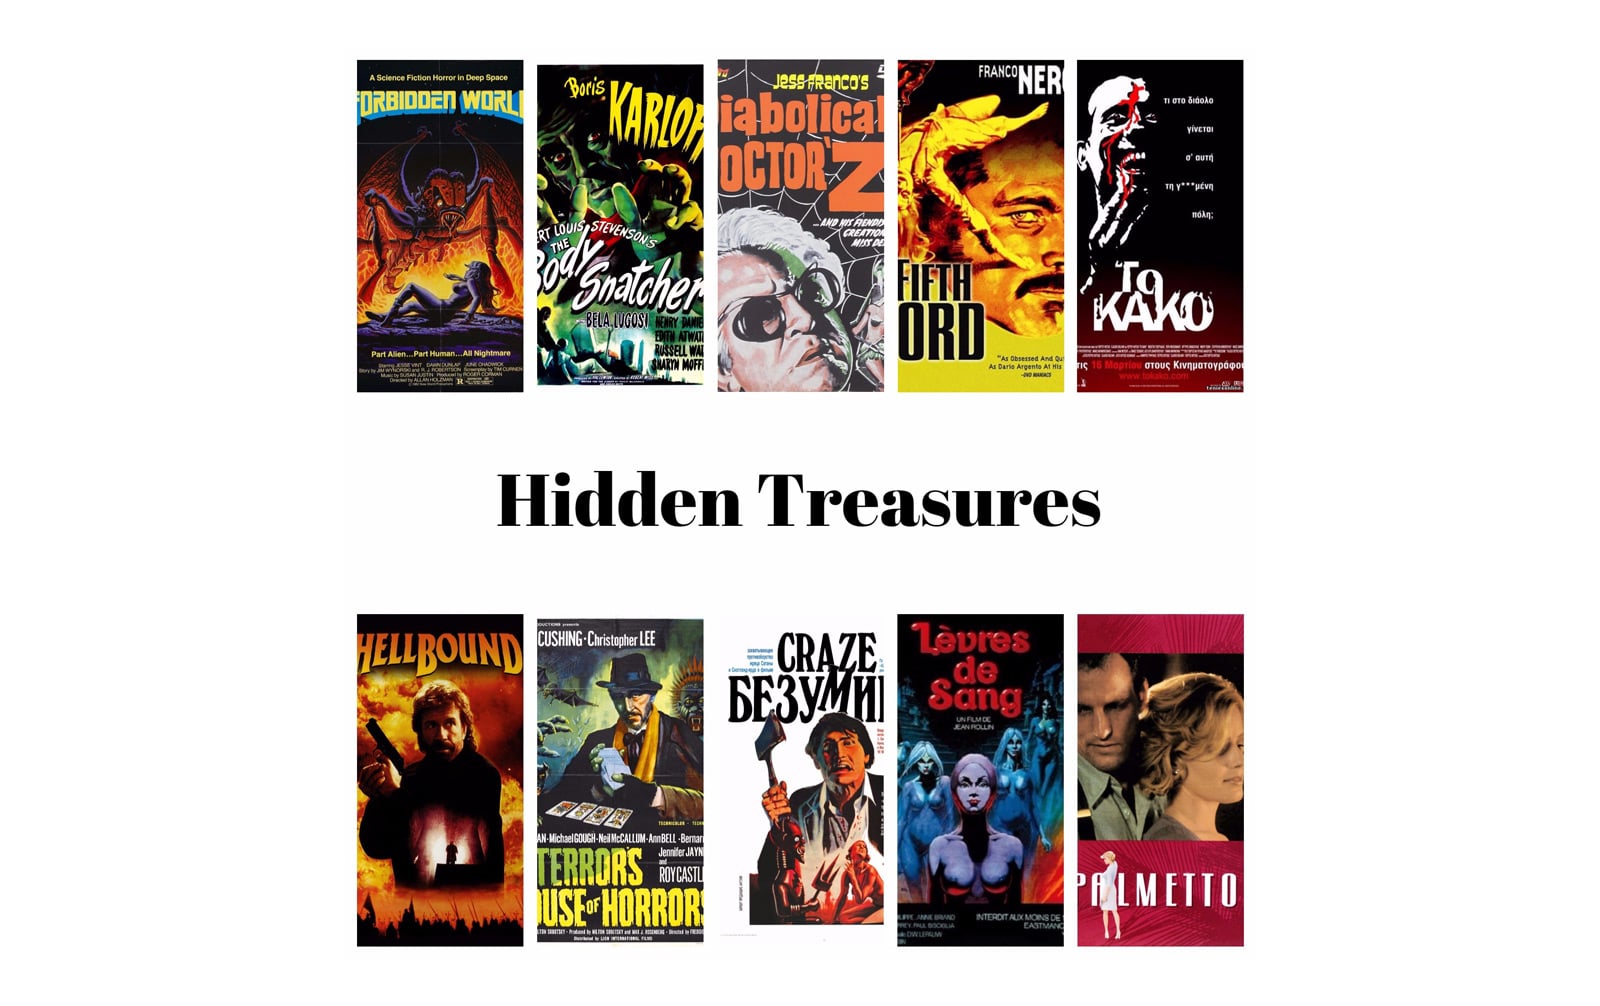 hidden treasures